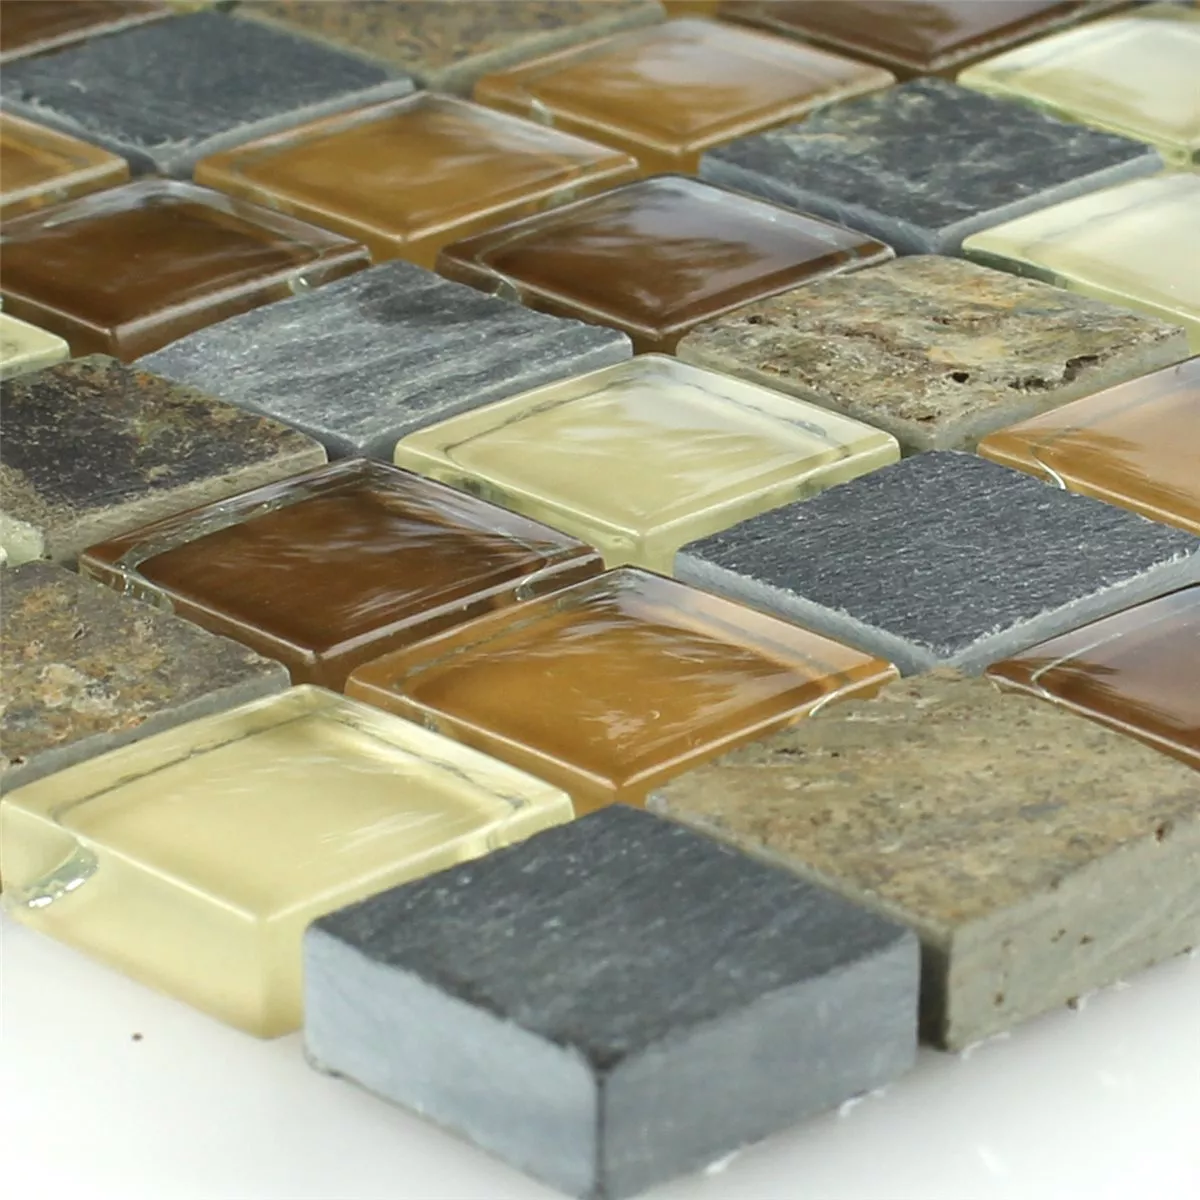 Muster von Mosaikfliesen Glas Naturstein Beige